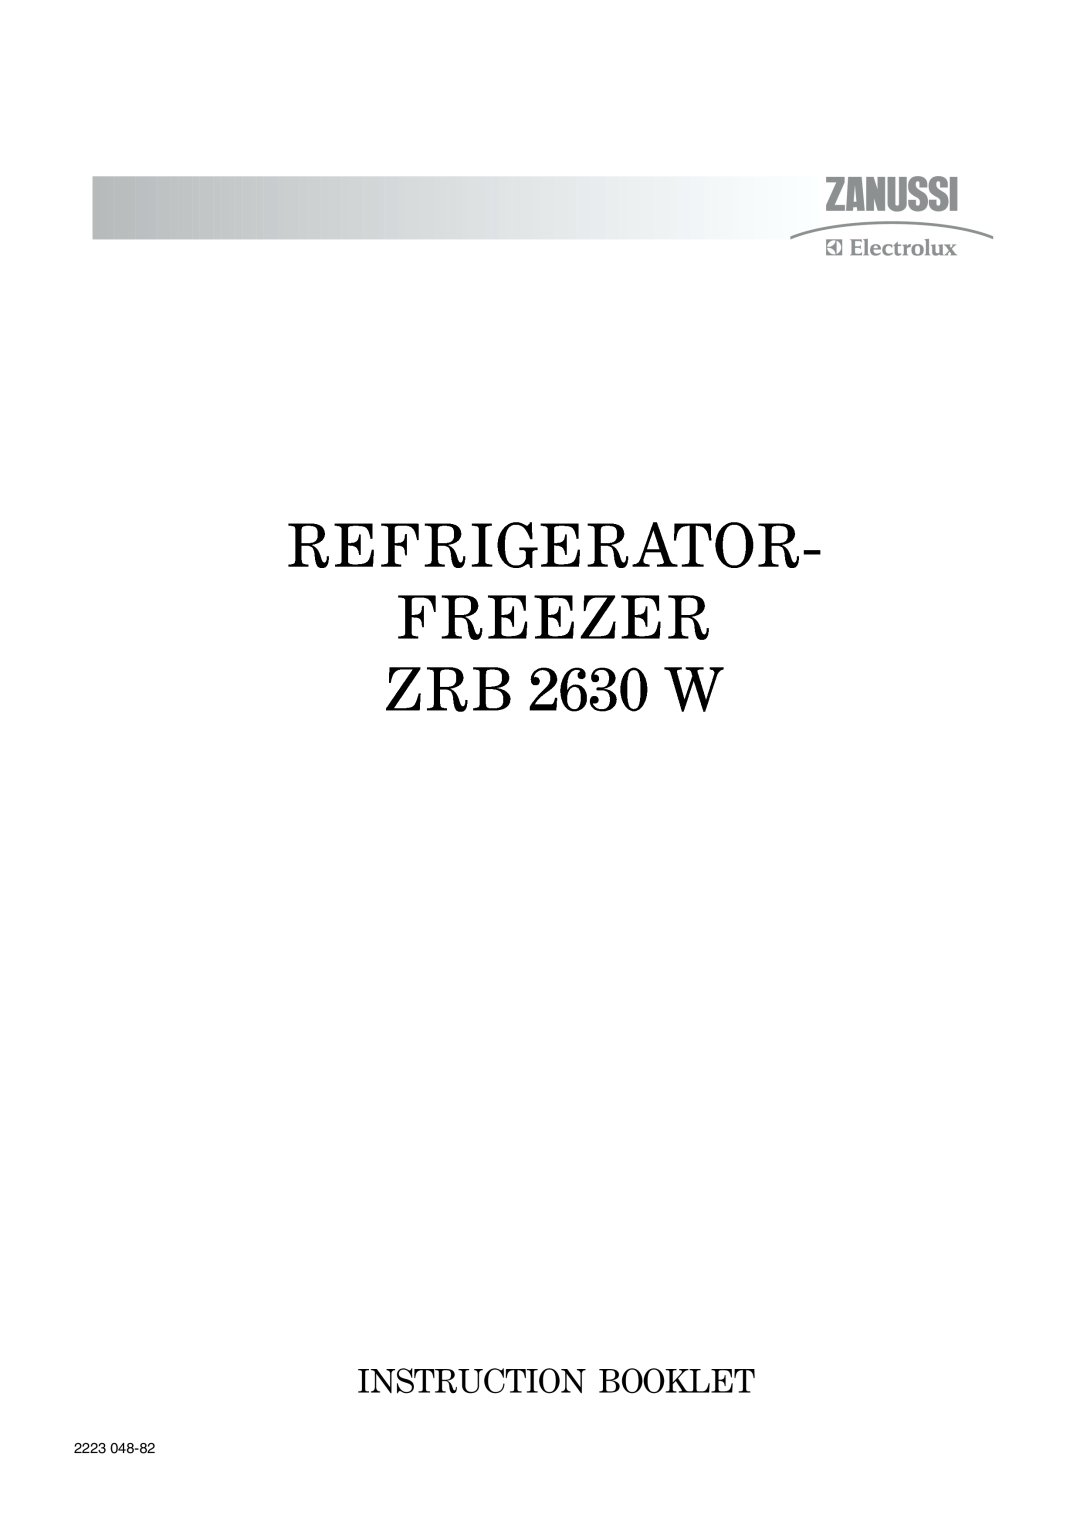 Zanussi manual REFRIGERATOR FREEZER ZRB 2630 W, Instruction Booklet, 2223 